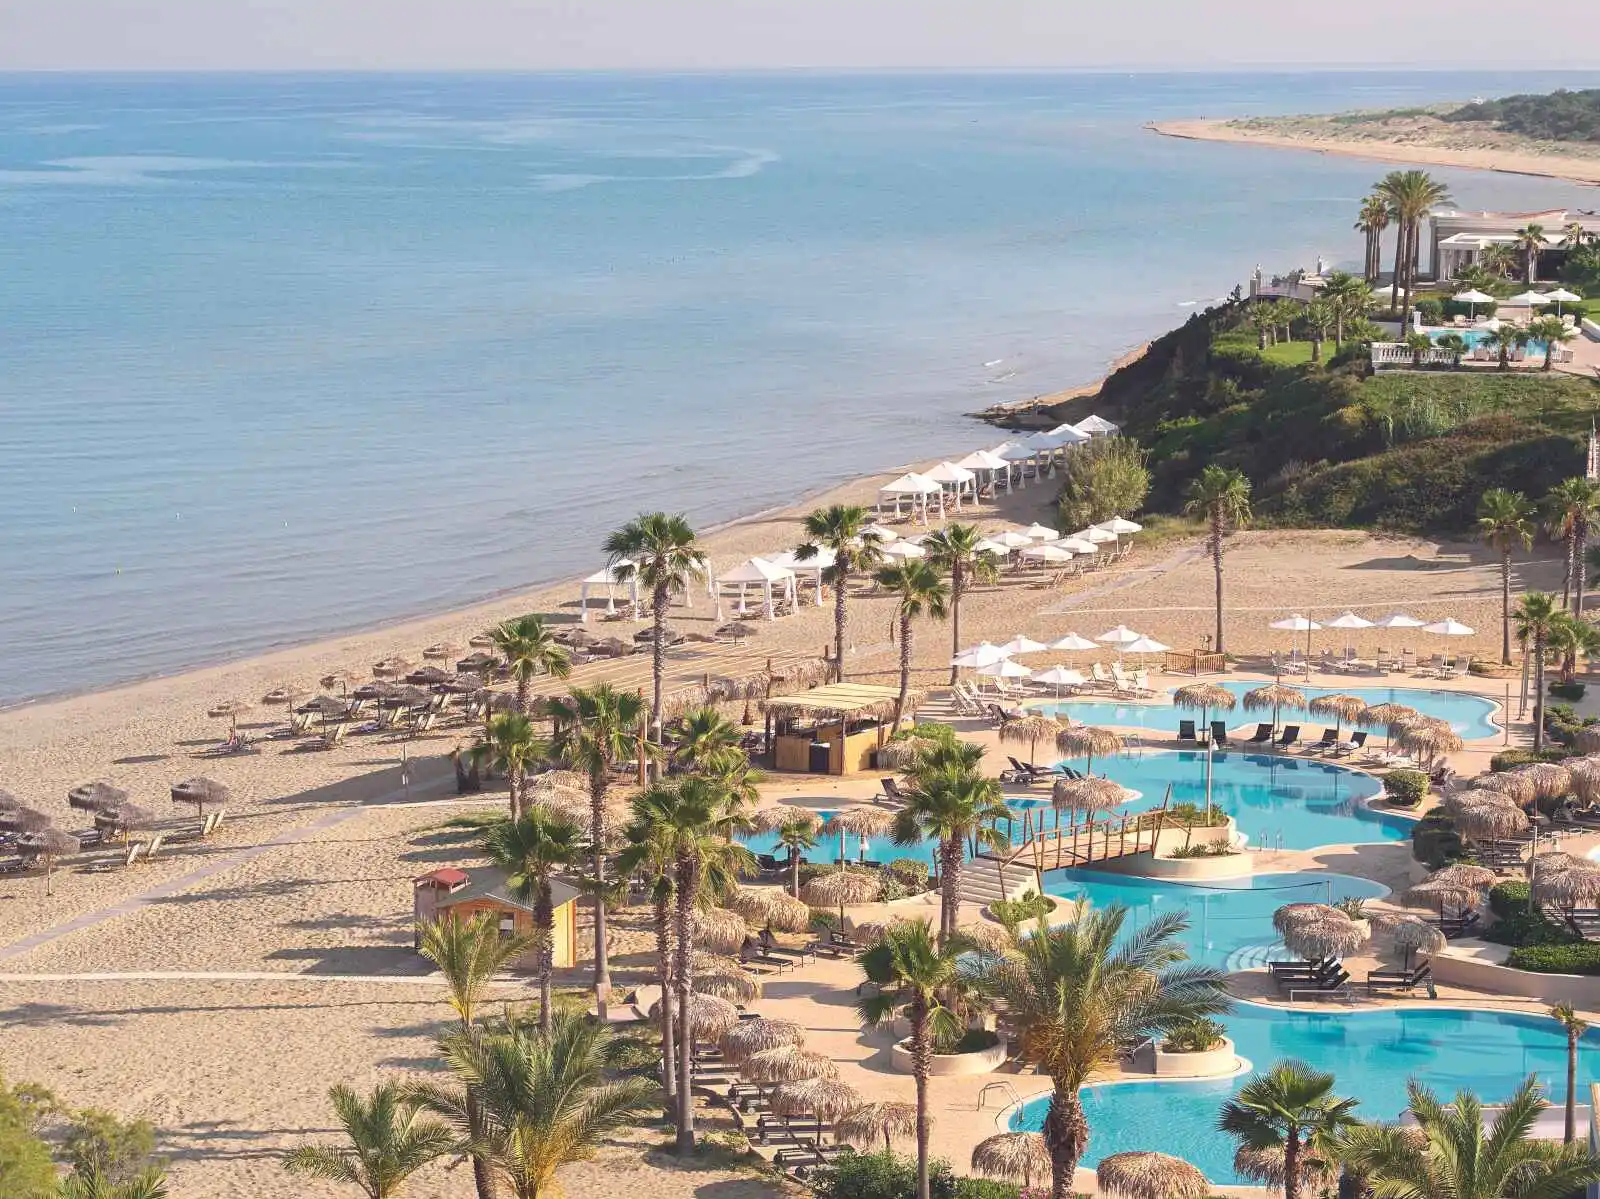 Vue sur la plage et la piscine de l'hôtel, Grecotel LUXME Oasis & Aqua Park